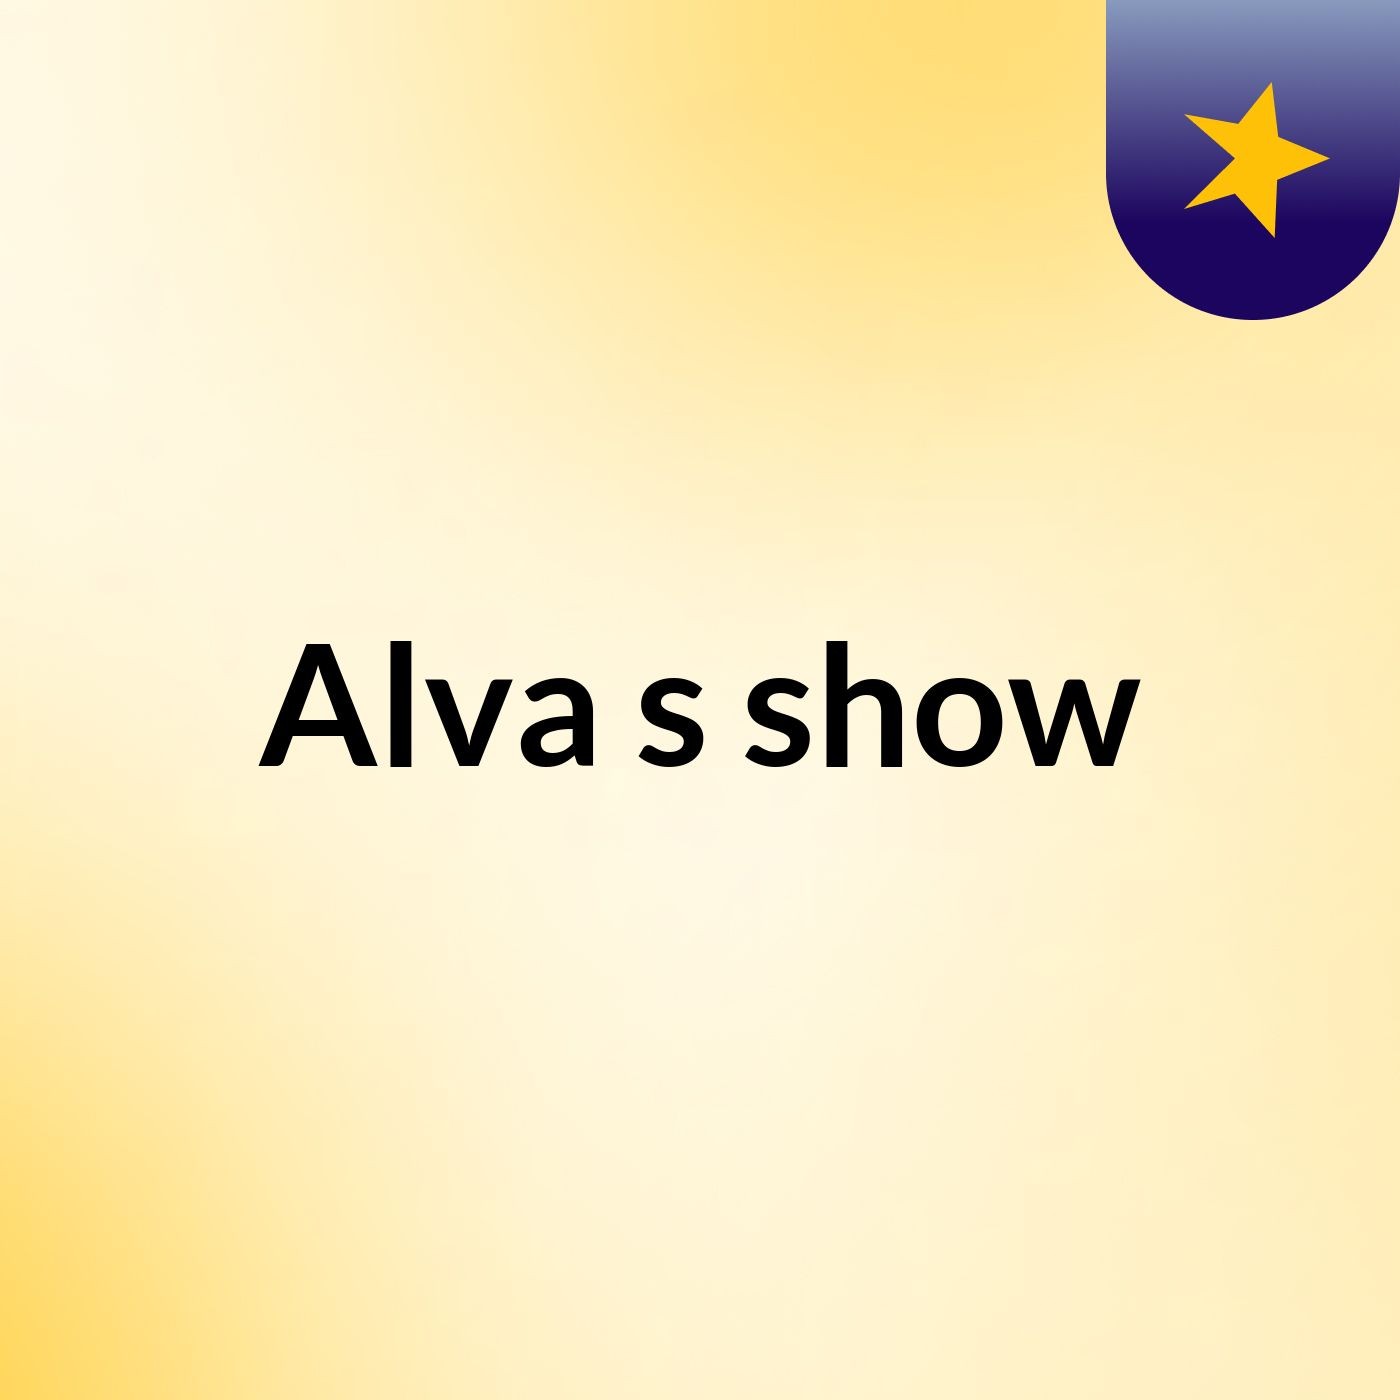 Alva's show